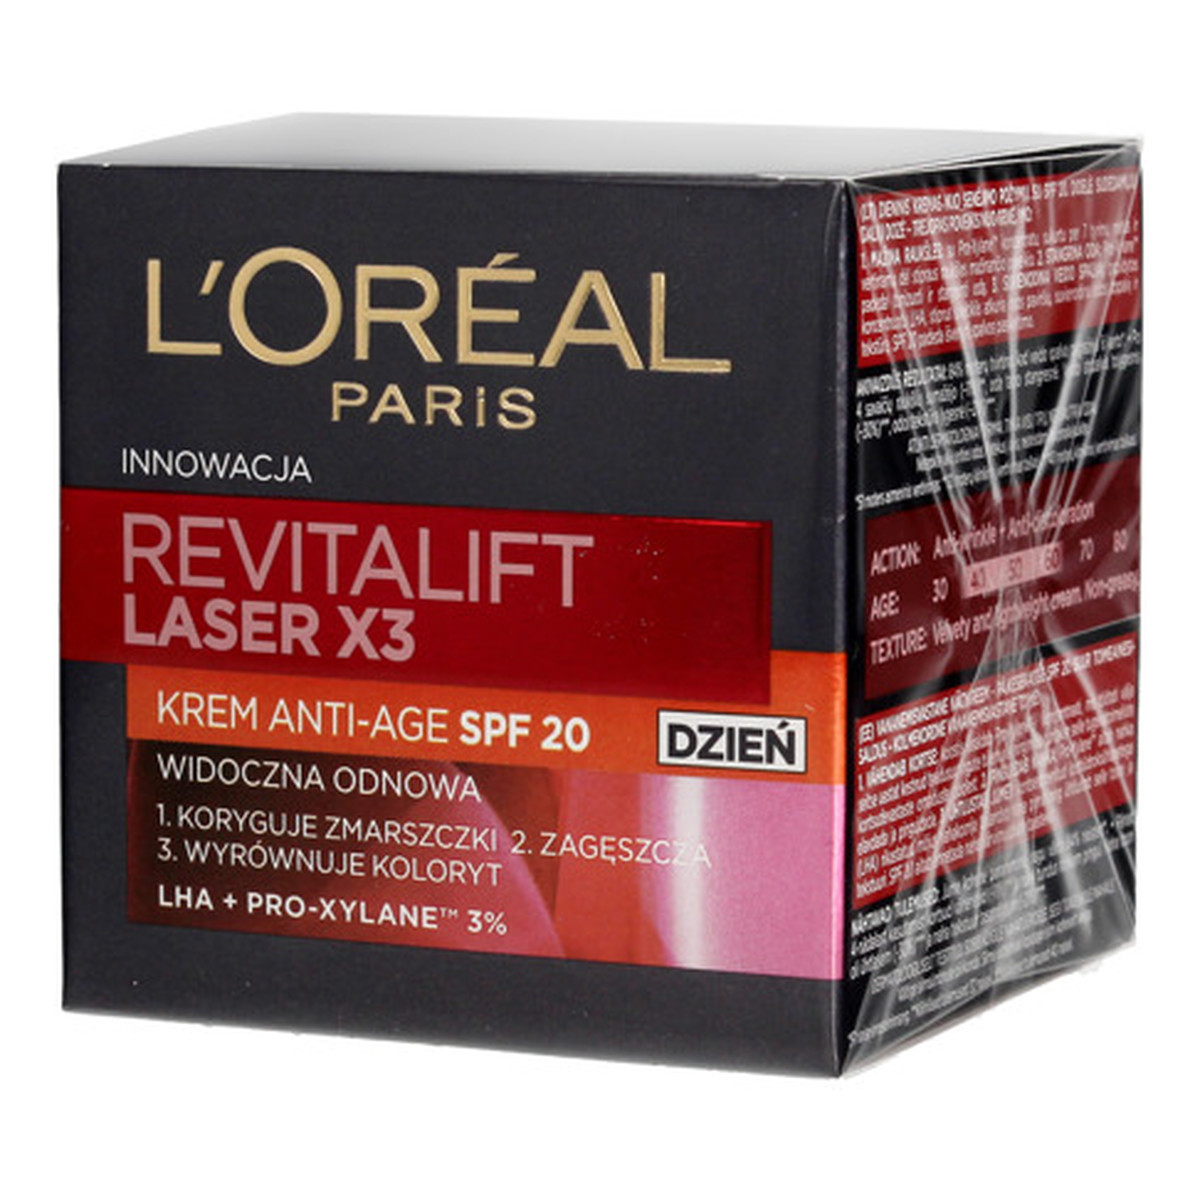 L'Oreal Paris REVITALIFT LASER X3 Krem przeciwzmarszczkowy SPF20 na dzień 50ml